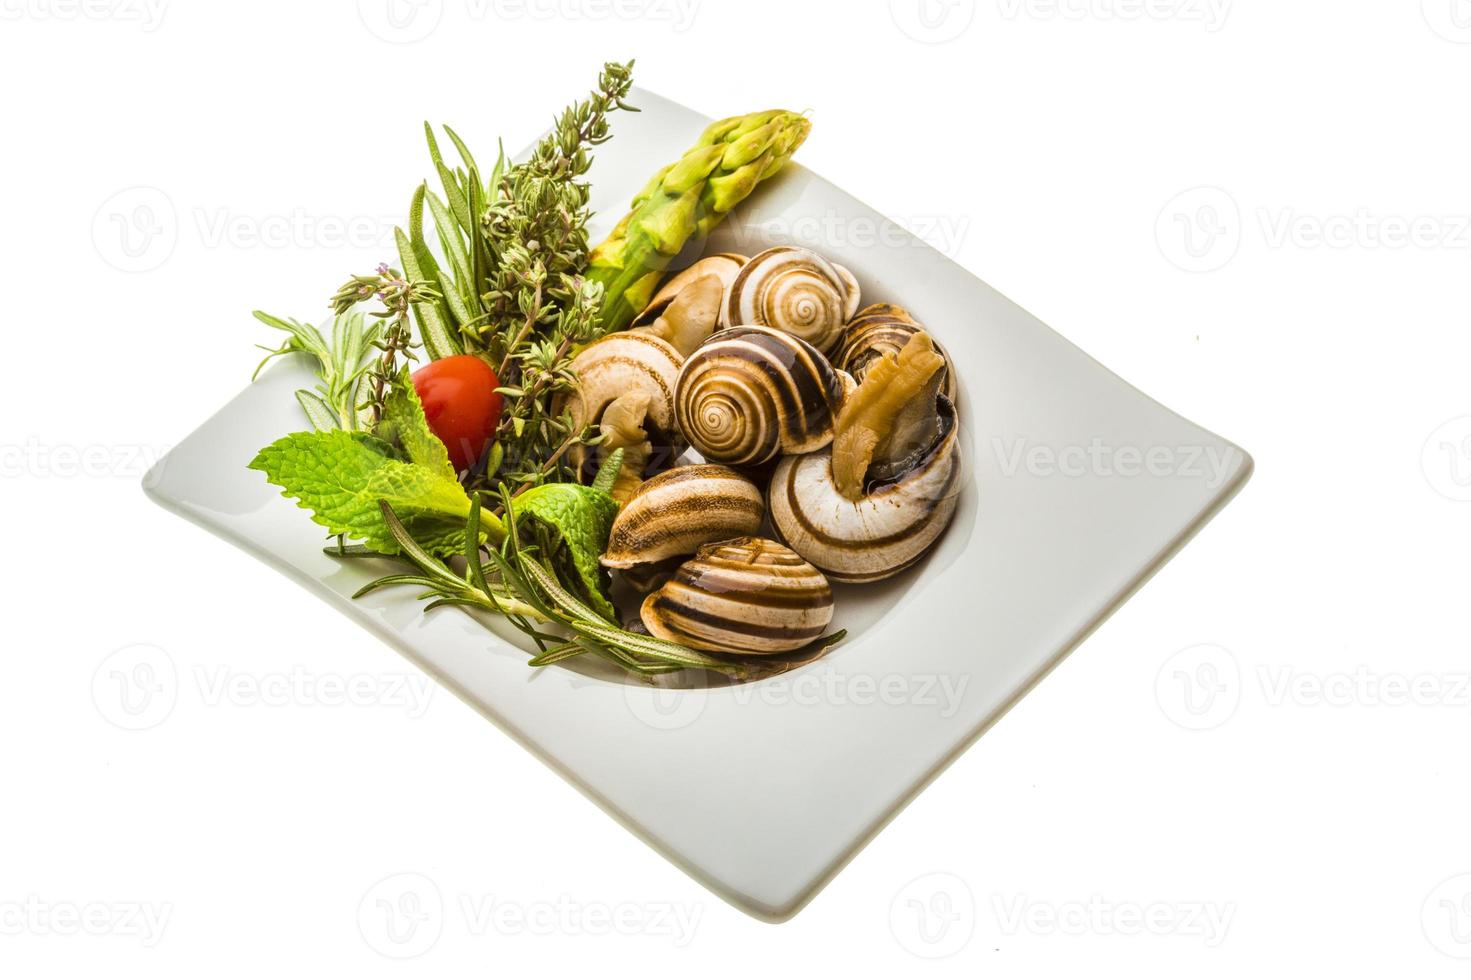 Schnecke mit Spargel, Rosmarin, Thymus und Tomate foto